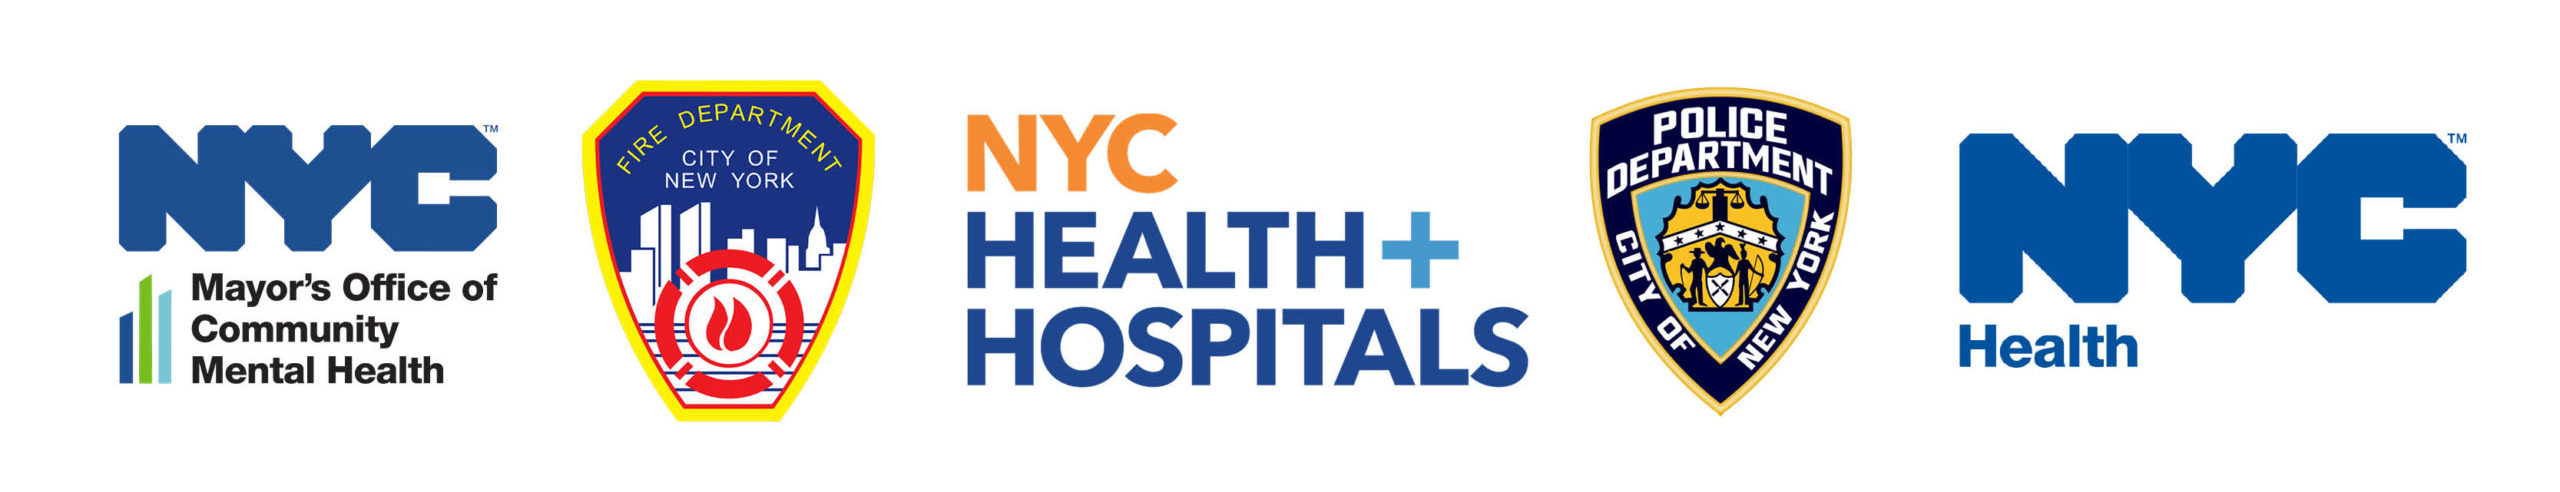 OCMH logo, FDNY logo, NYC Health and Hospitals logo, NYPD logo